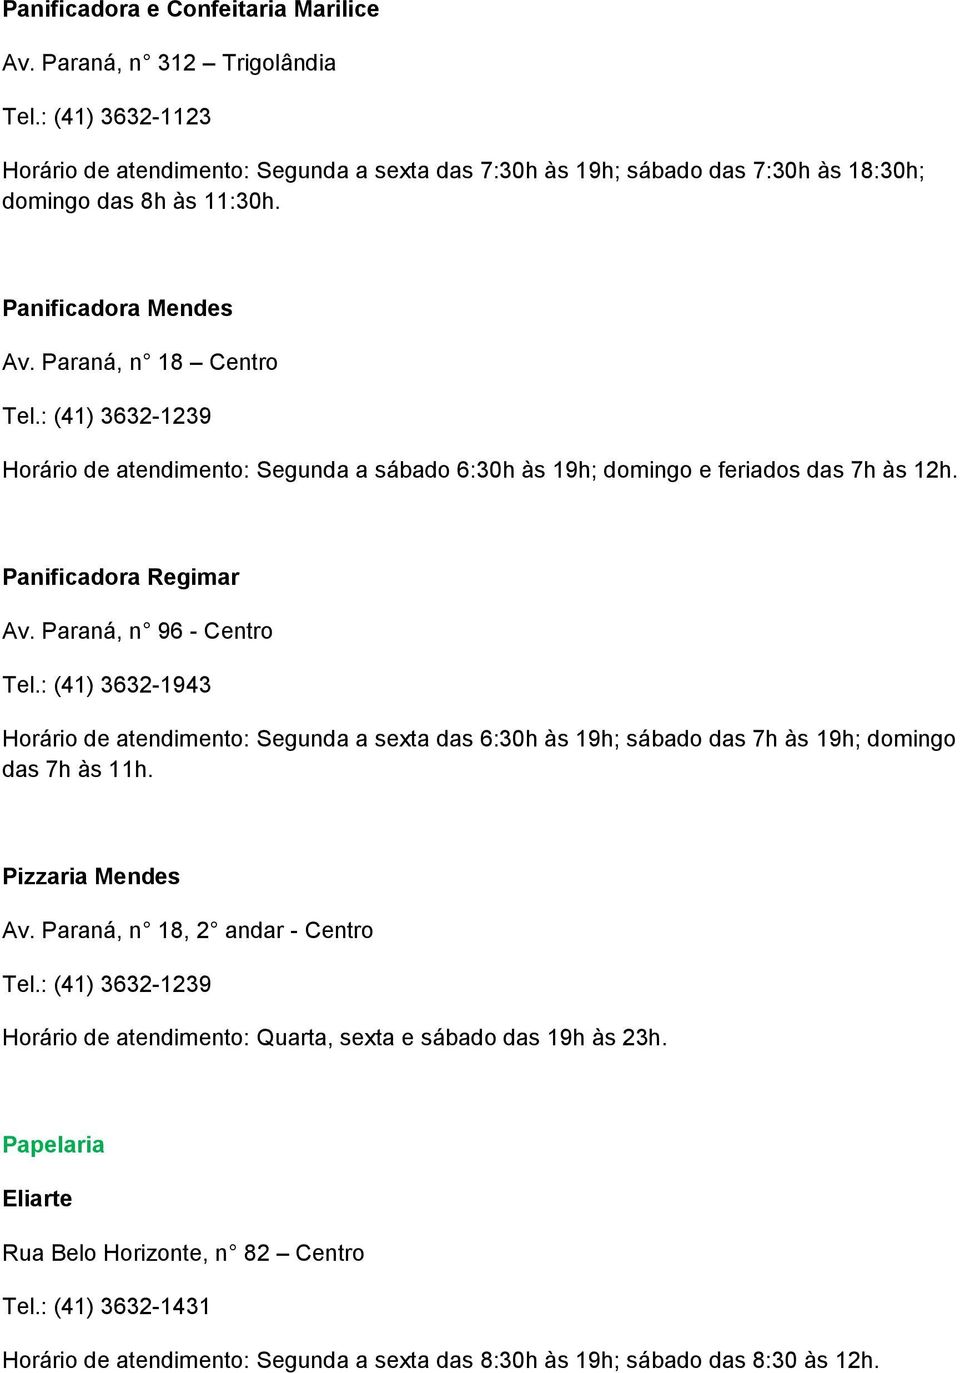 Paraná, n 96 - Centro Tel.: (41) 3632-1943 Horário de atendimento: Segunda a sexta das 6:30h às 19h; sábado das 7h às 19h; domingo das 7h às 11h. Pizzaria Mendes Av.